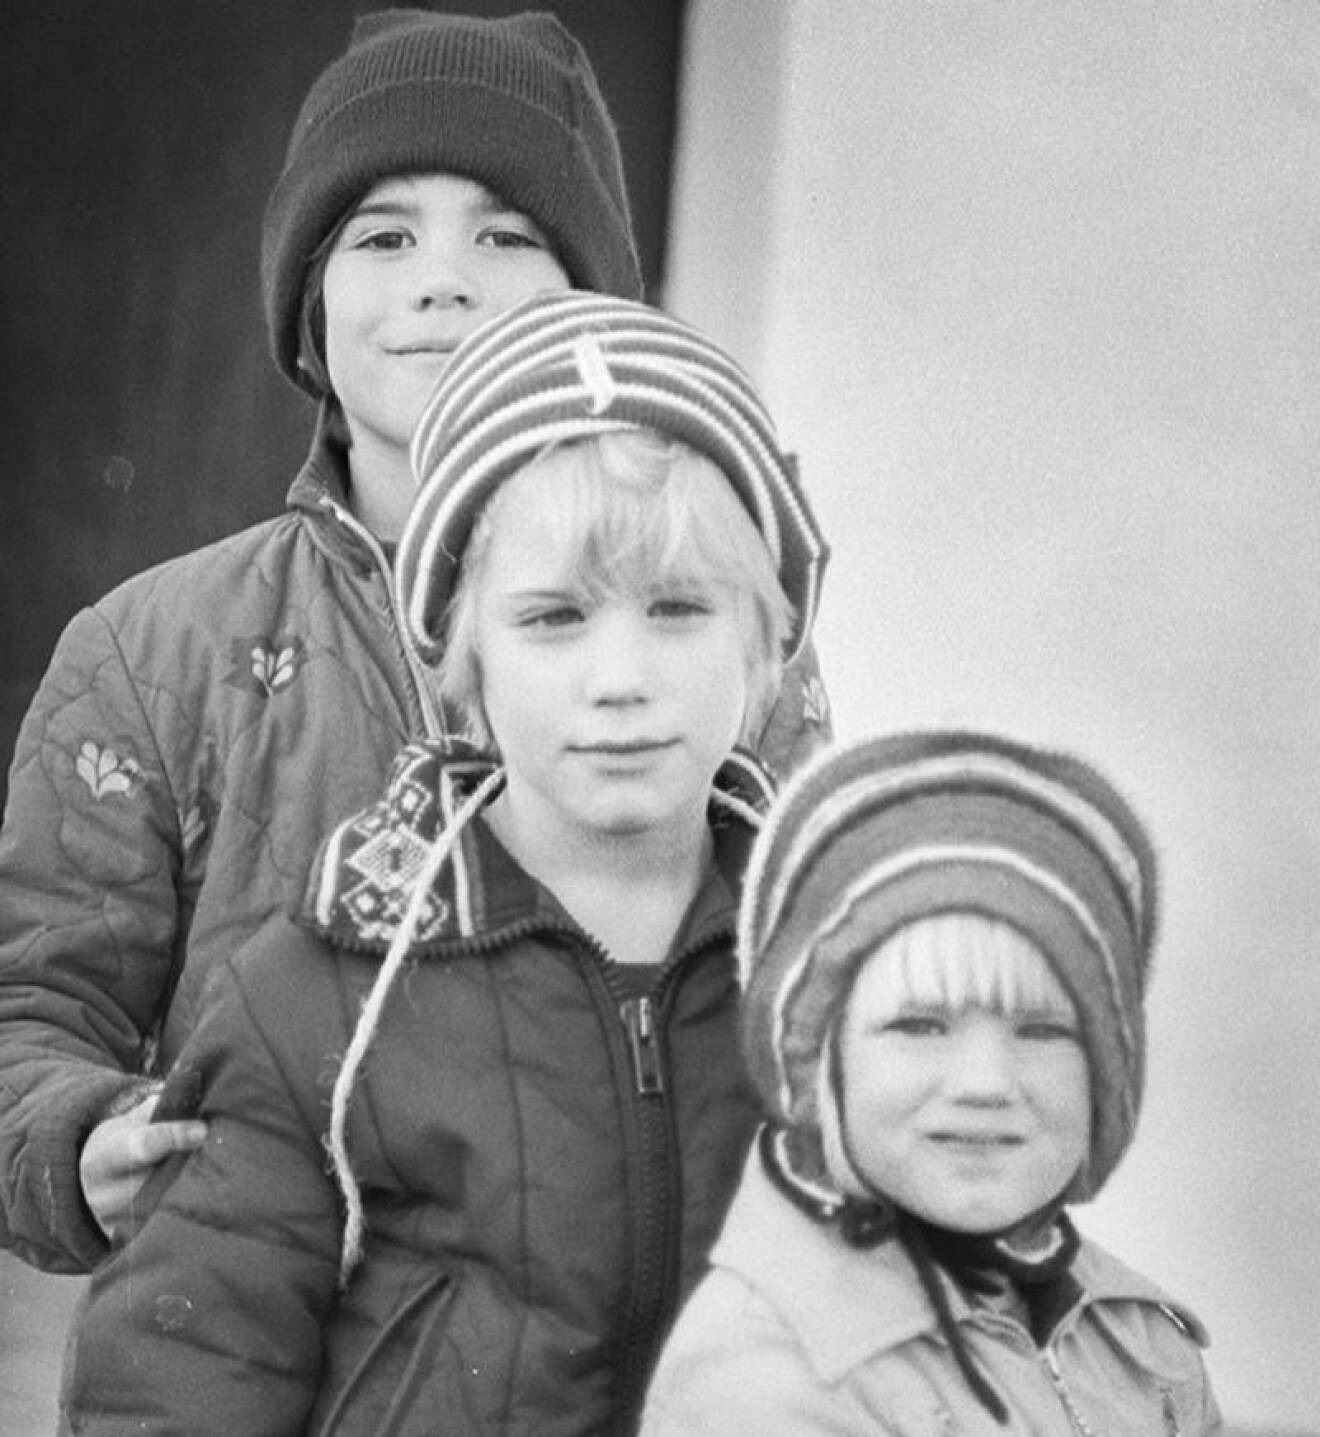 Martin Stenmarck som barn med sina två helsyskon, lillebror David och lillasyster Emelie.